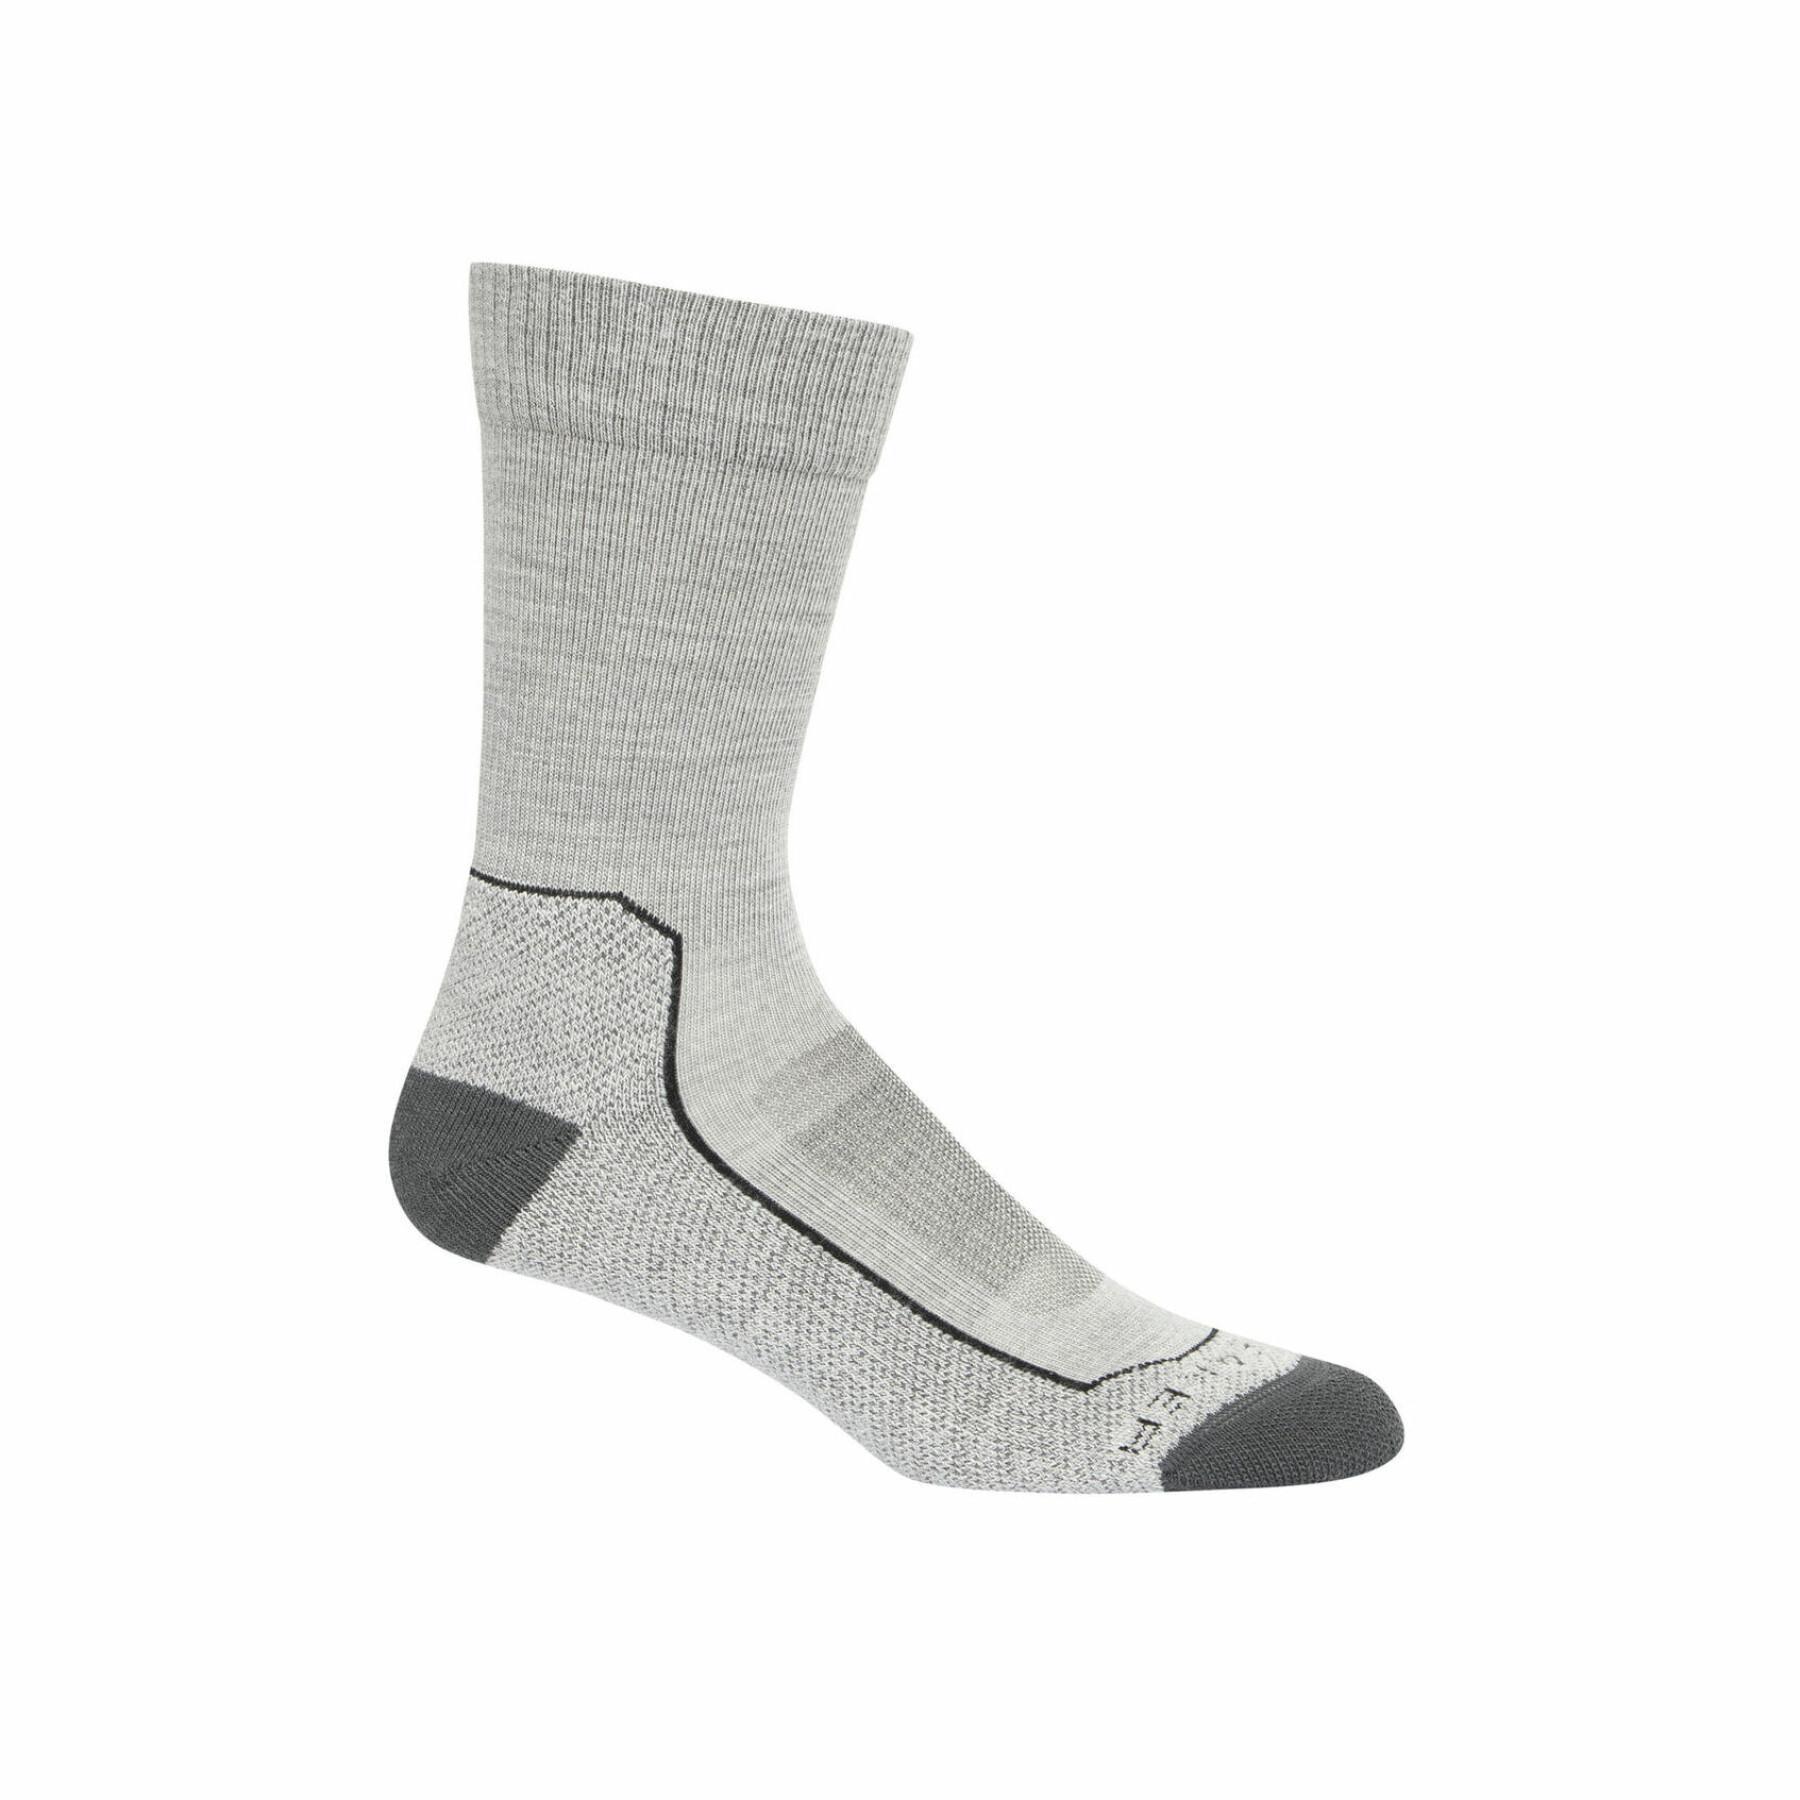 Lightweight socks Icebreaker hikecrewe